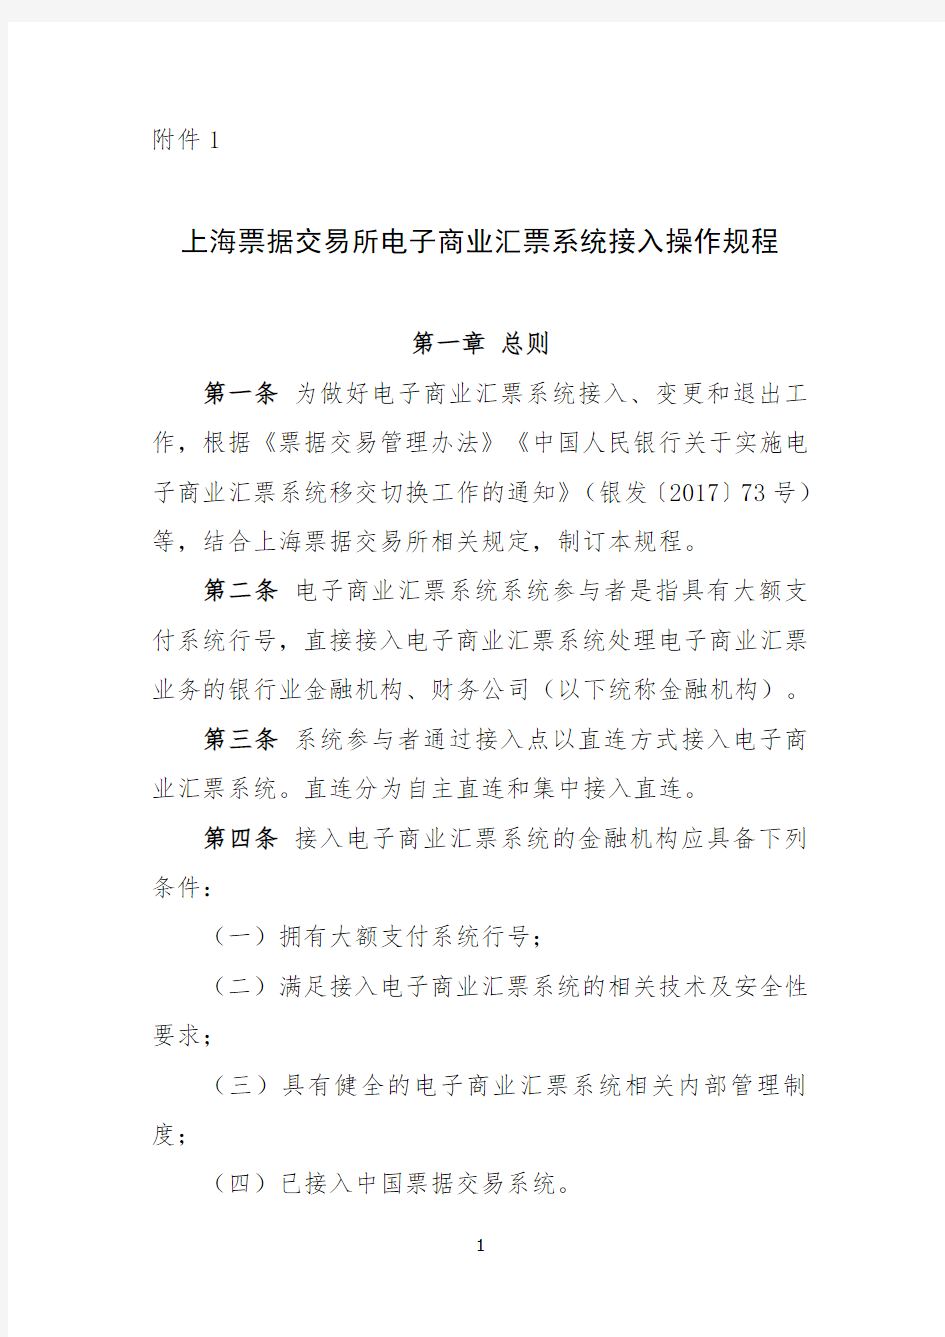 上海票据交易所电票系统接入操作规程